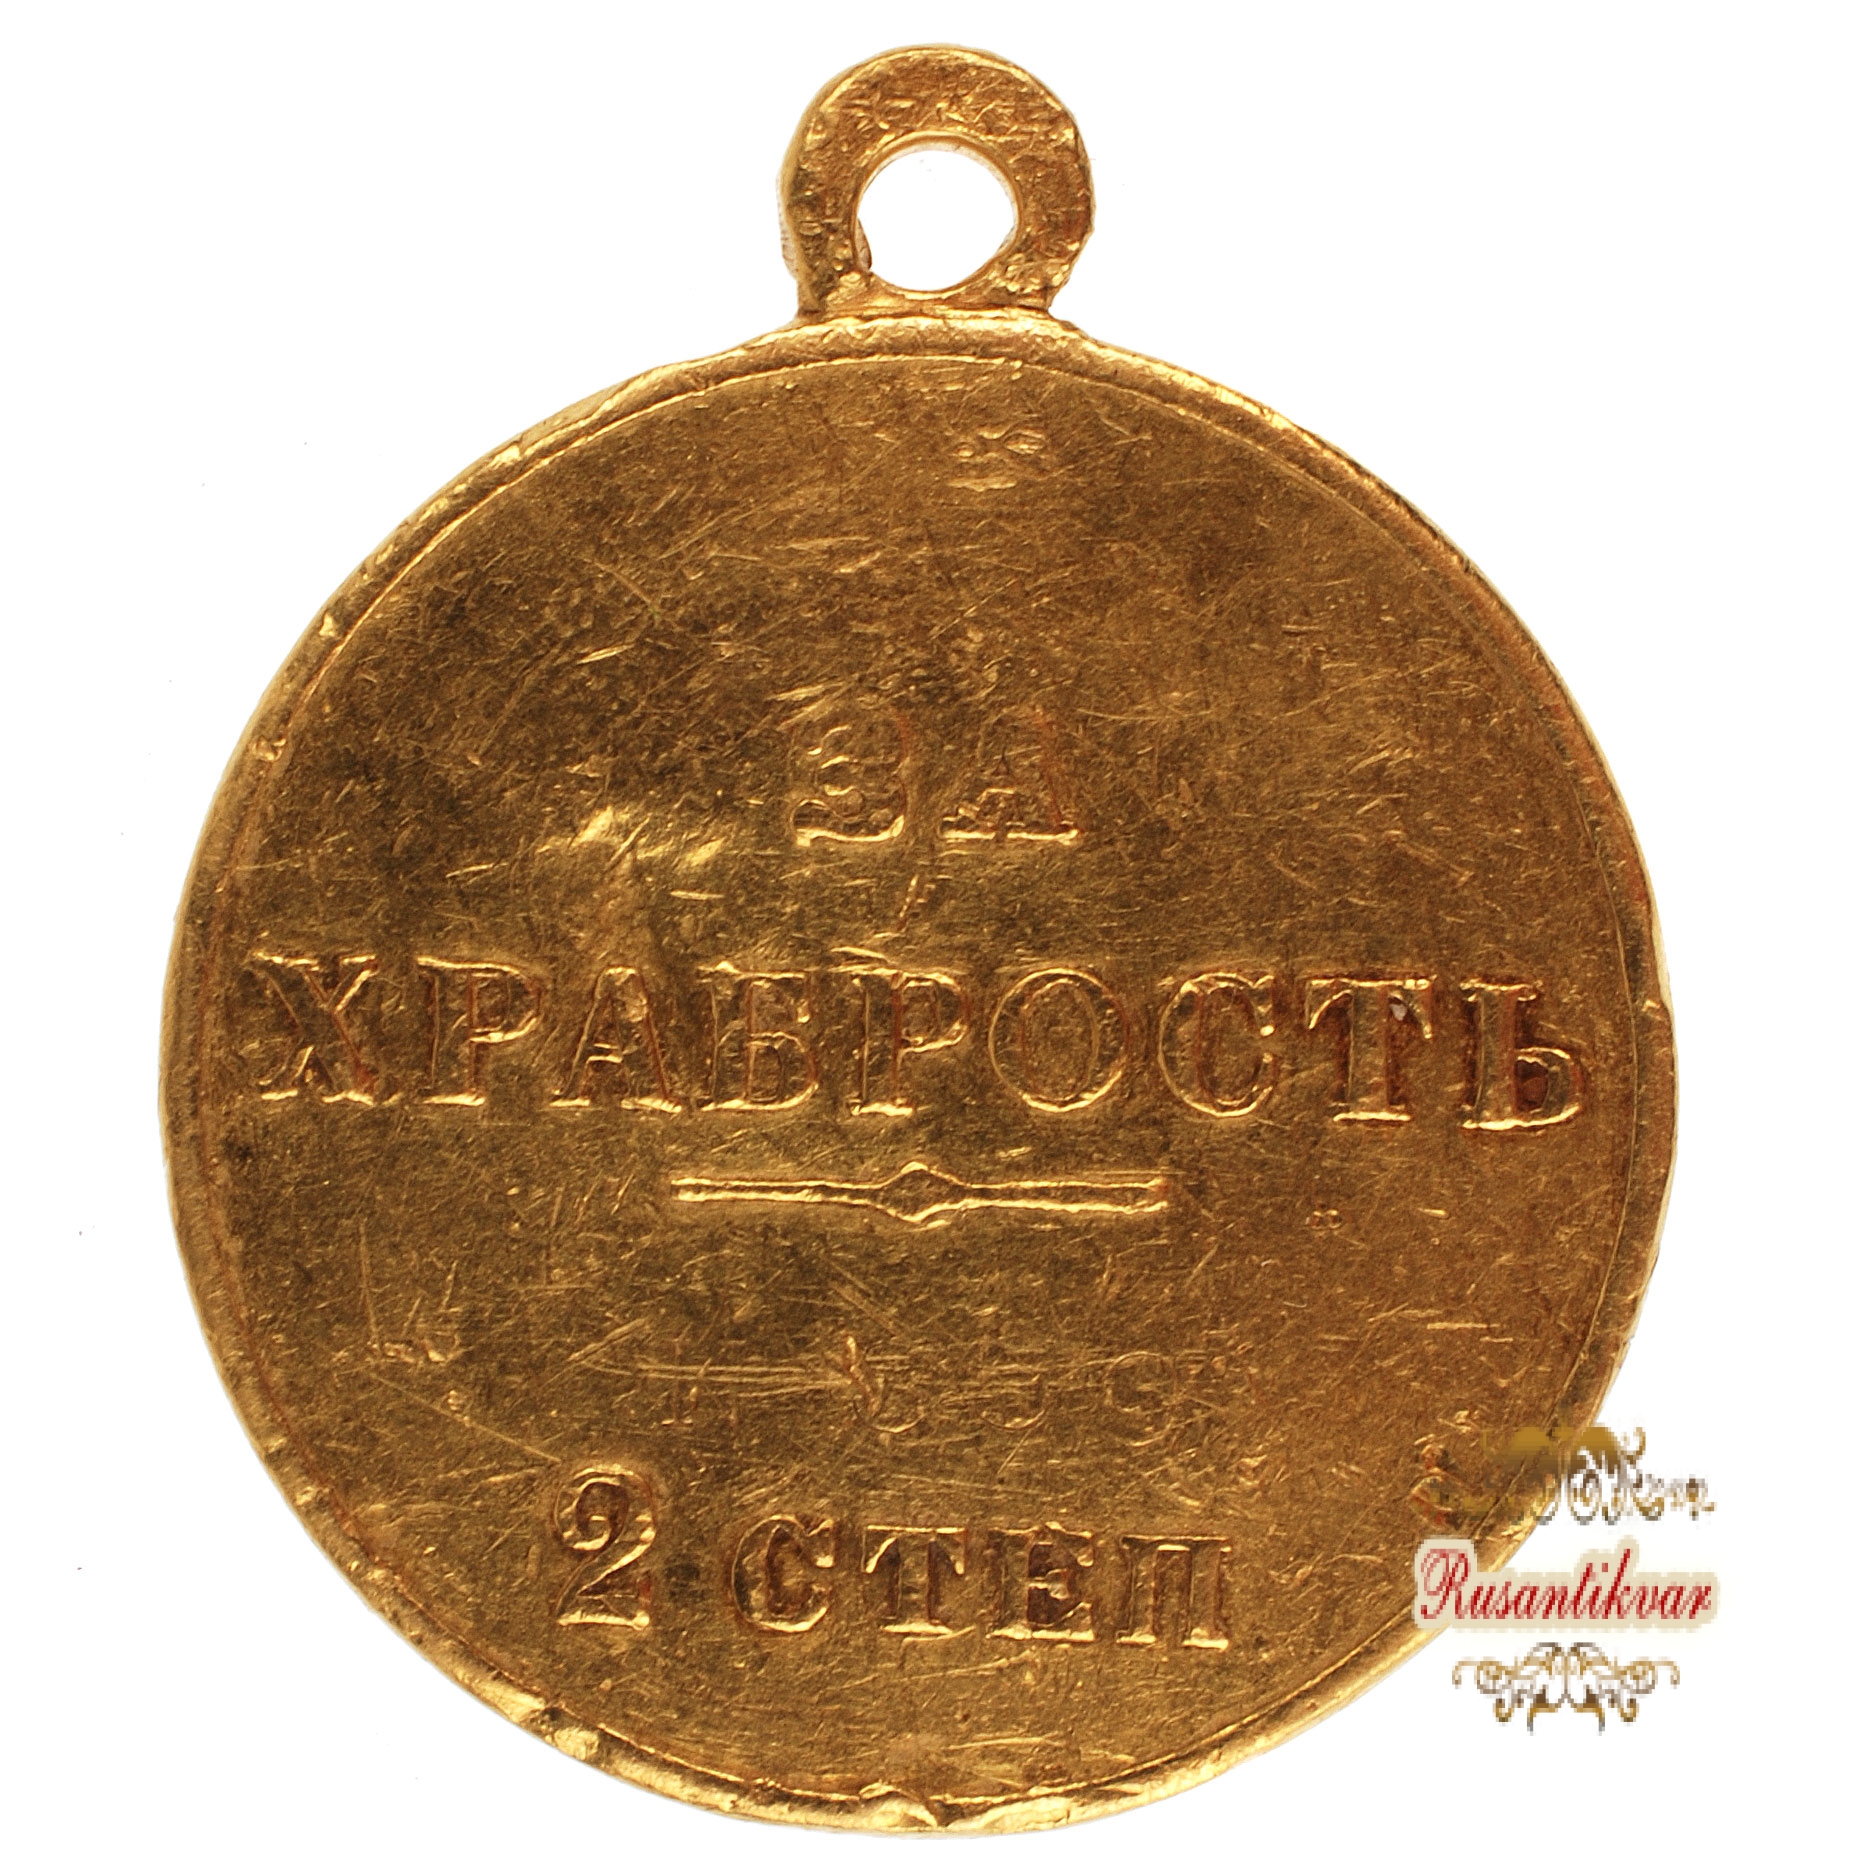 Георгиевская медаль 2 ст. №359 ( полновесная). (За Храбрость).